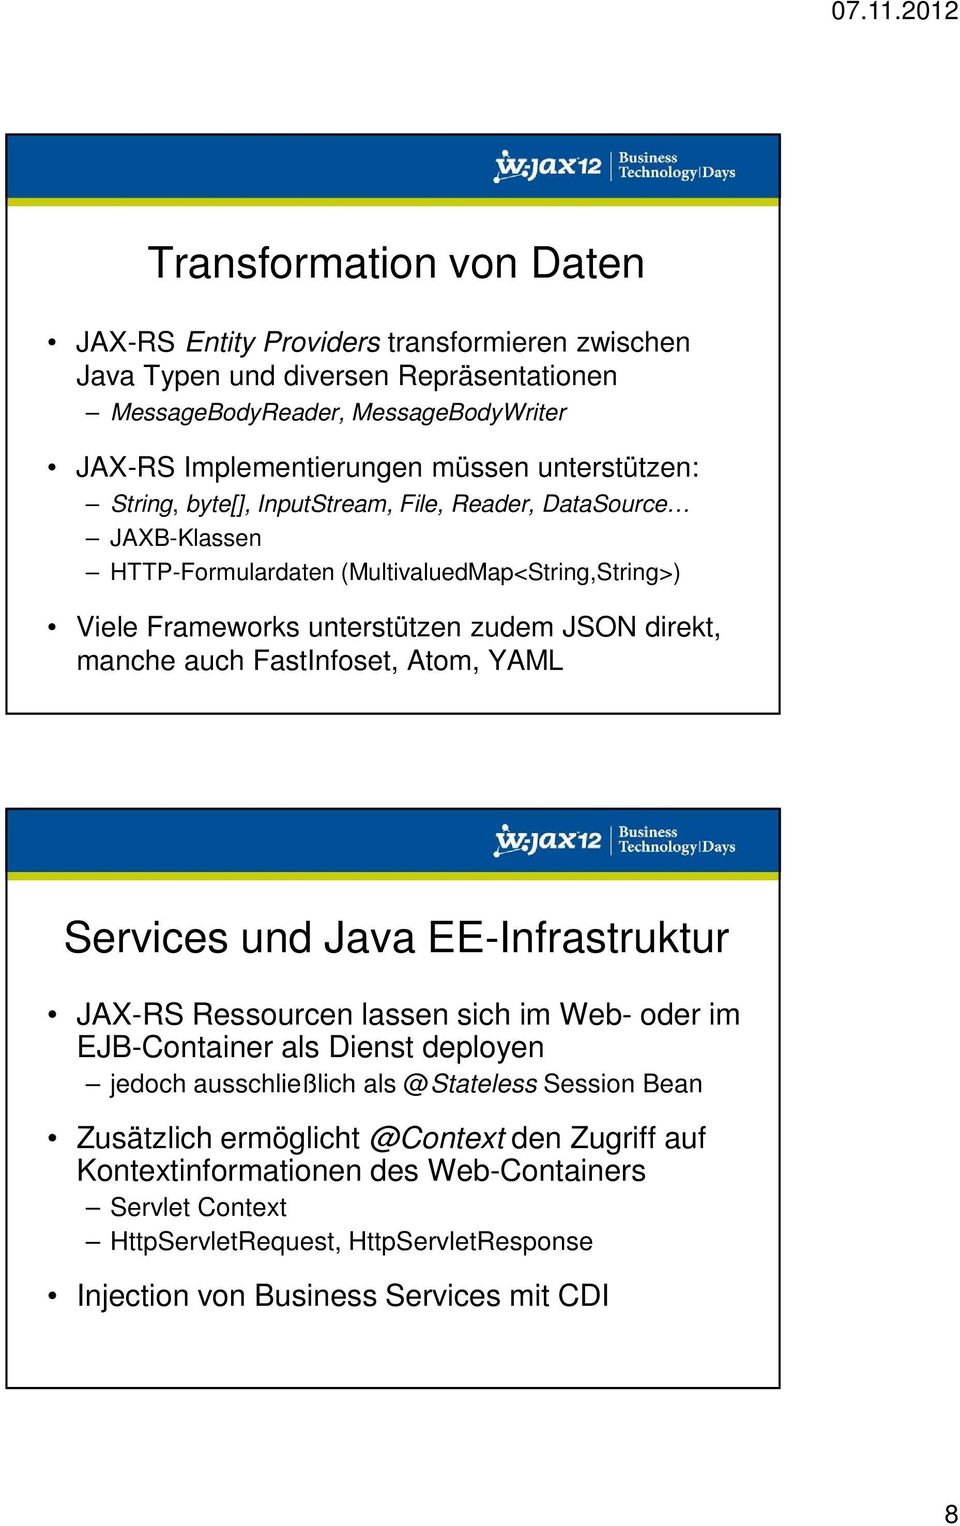 auch FastInfoset, Atom, YAML Services und Java EE-Infrastruktur JAX-RS Ressourcen lassen sich im Web- oder im EJB-Container als Dienst deployen jedoch ausschließlich als @Stateless